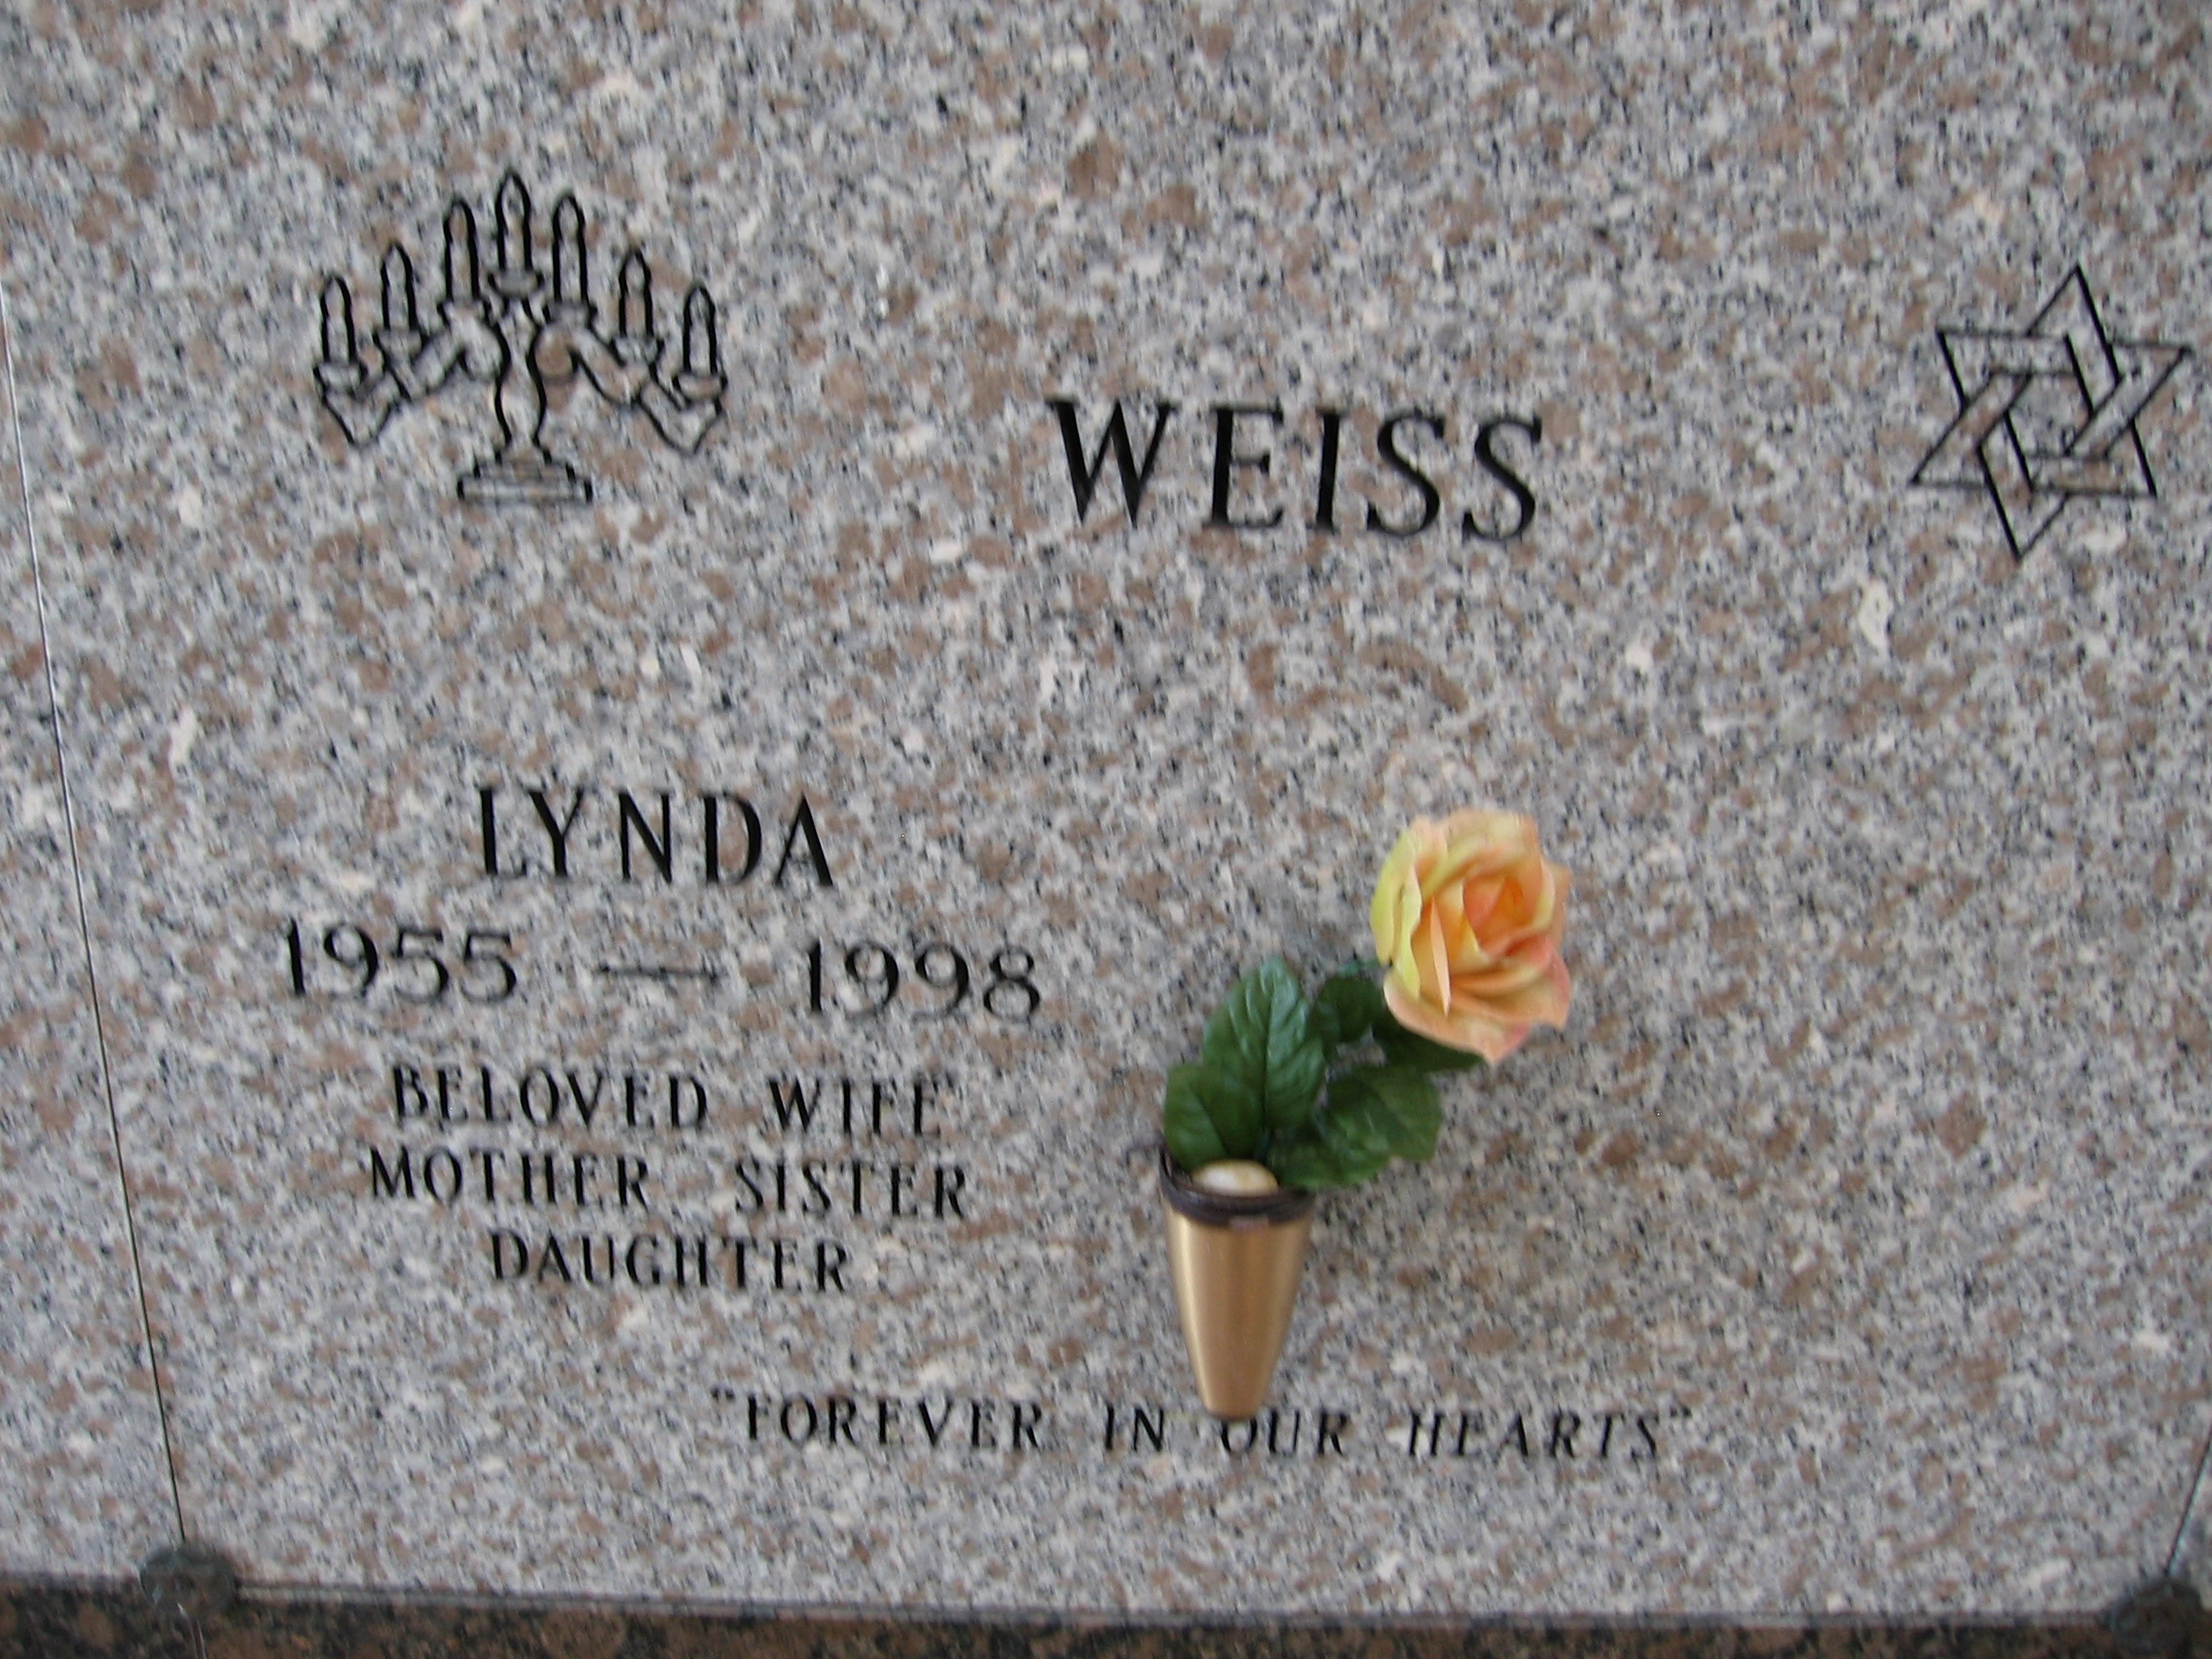 Lynda Weiss